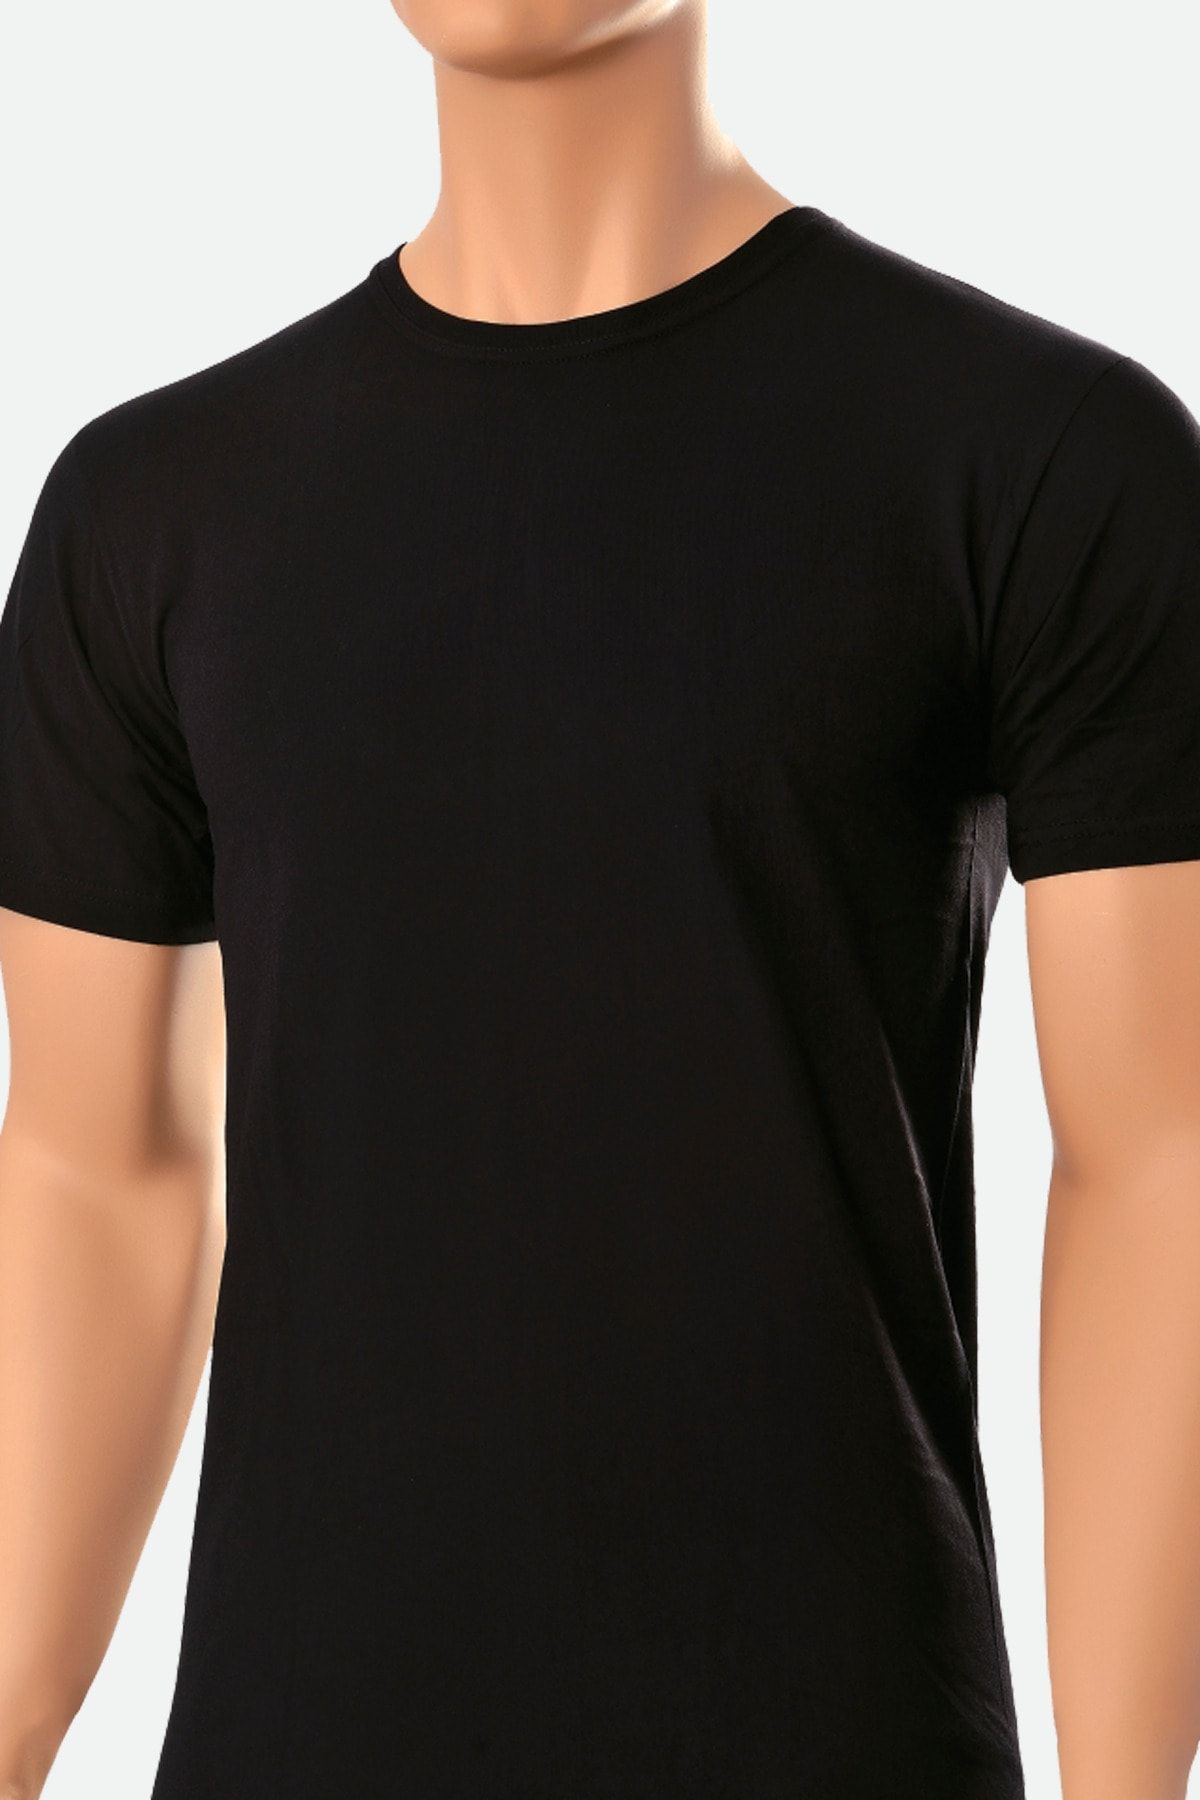 Öts 2'li Erkek Süprem Kapalı Yaka T-shirt Siyah (%100 Pamuk)